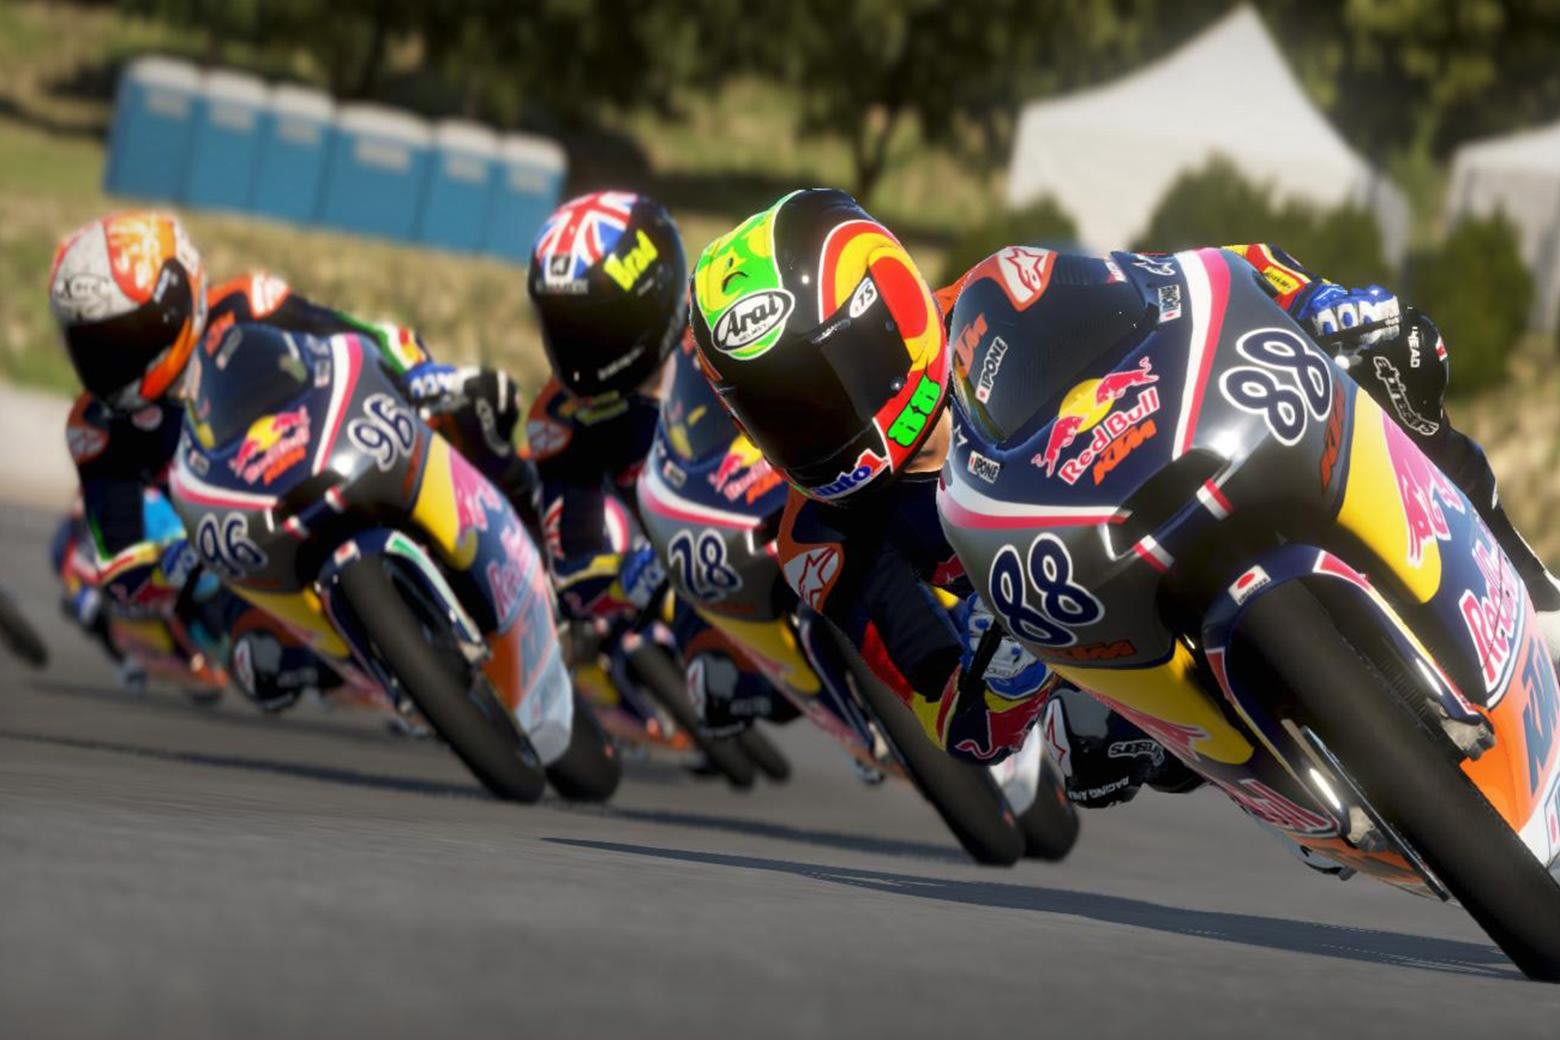 MotoGP 14 exclusive DLC reveal